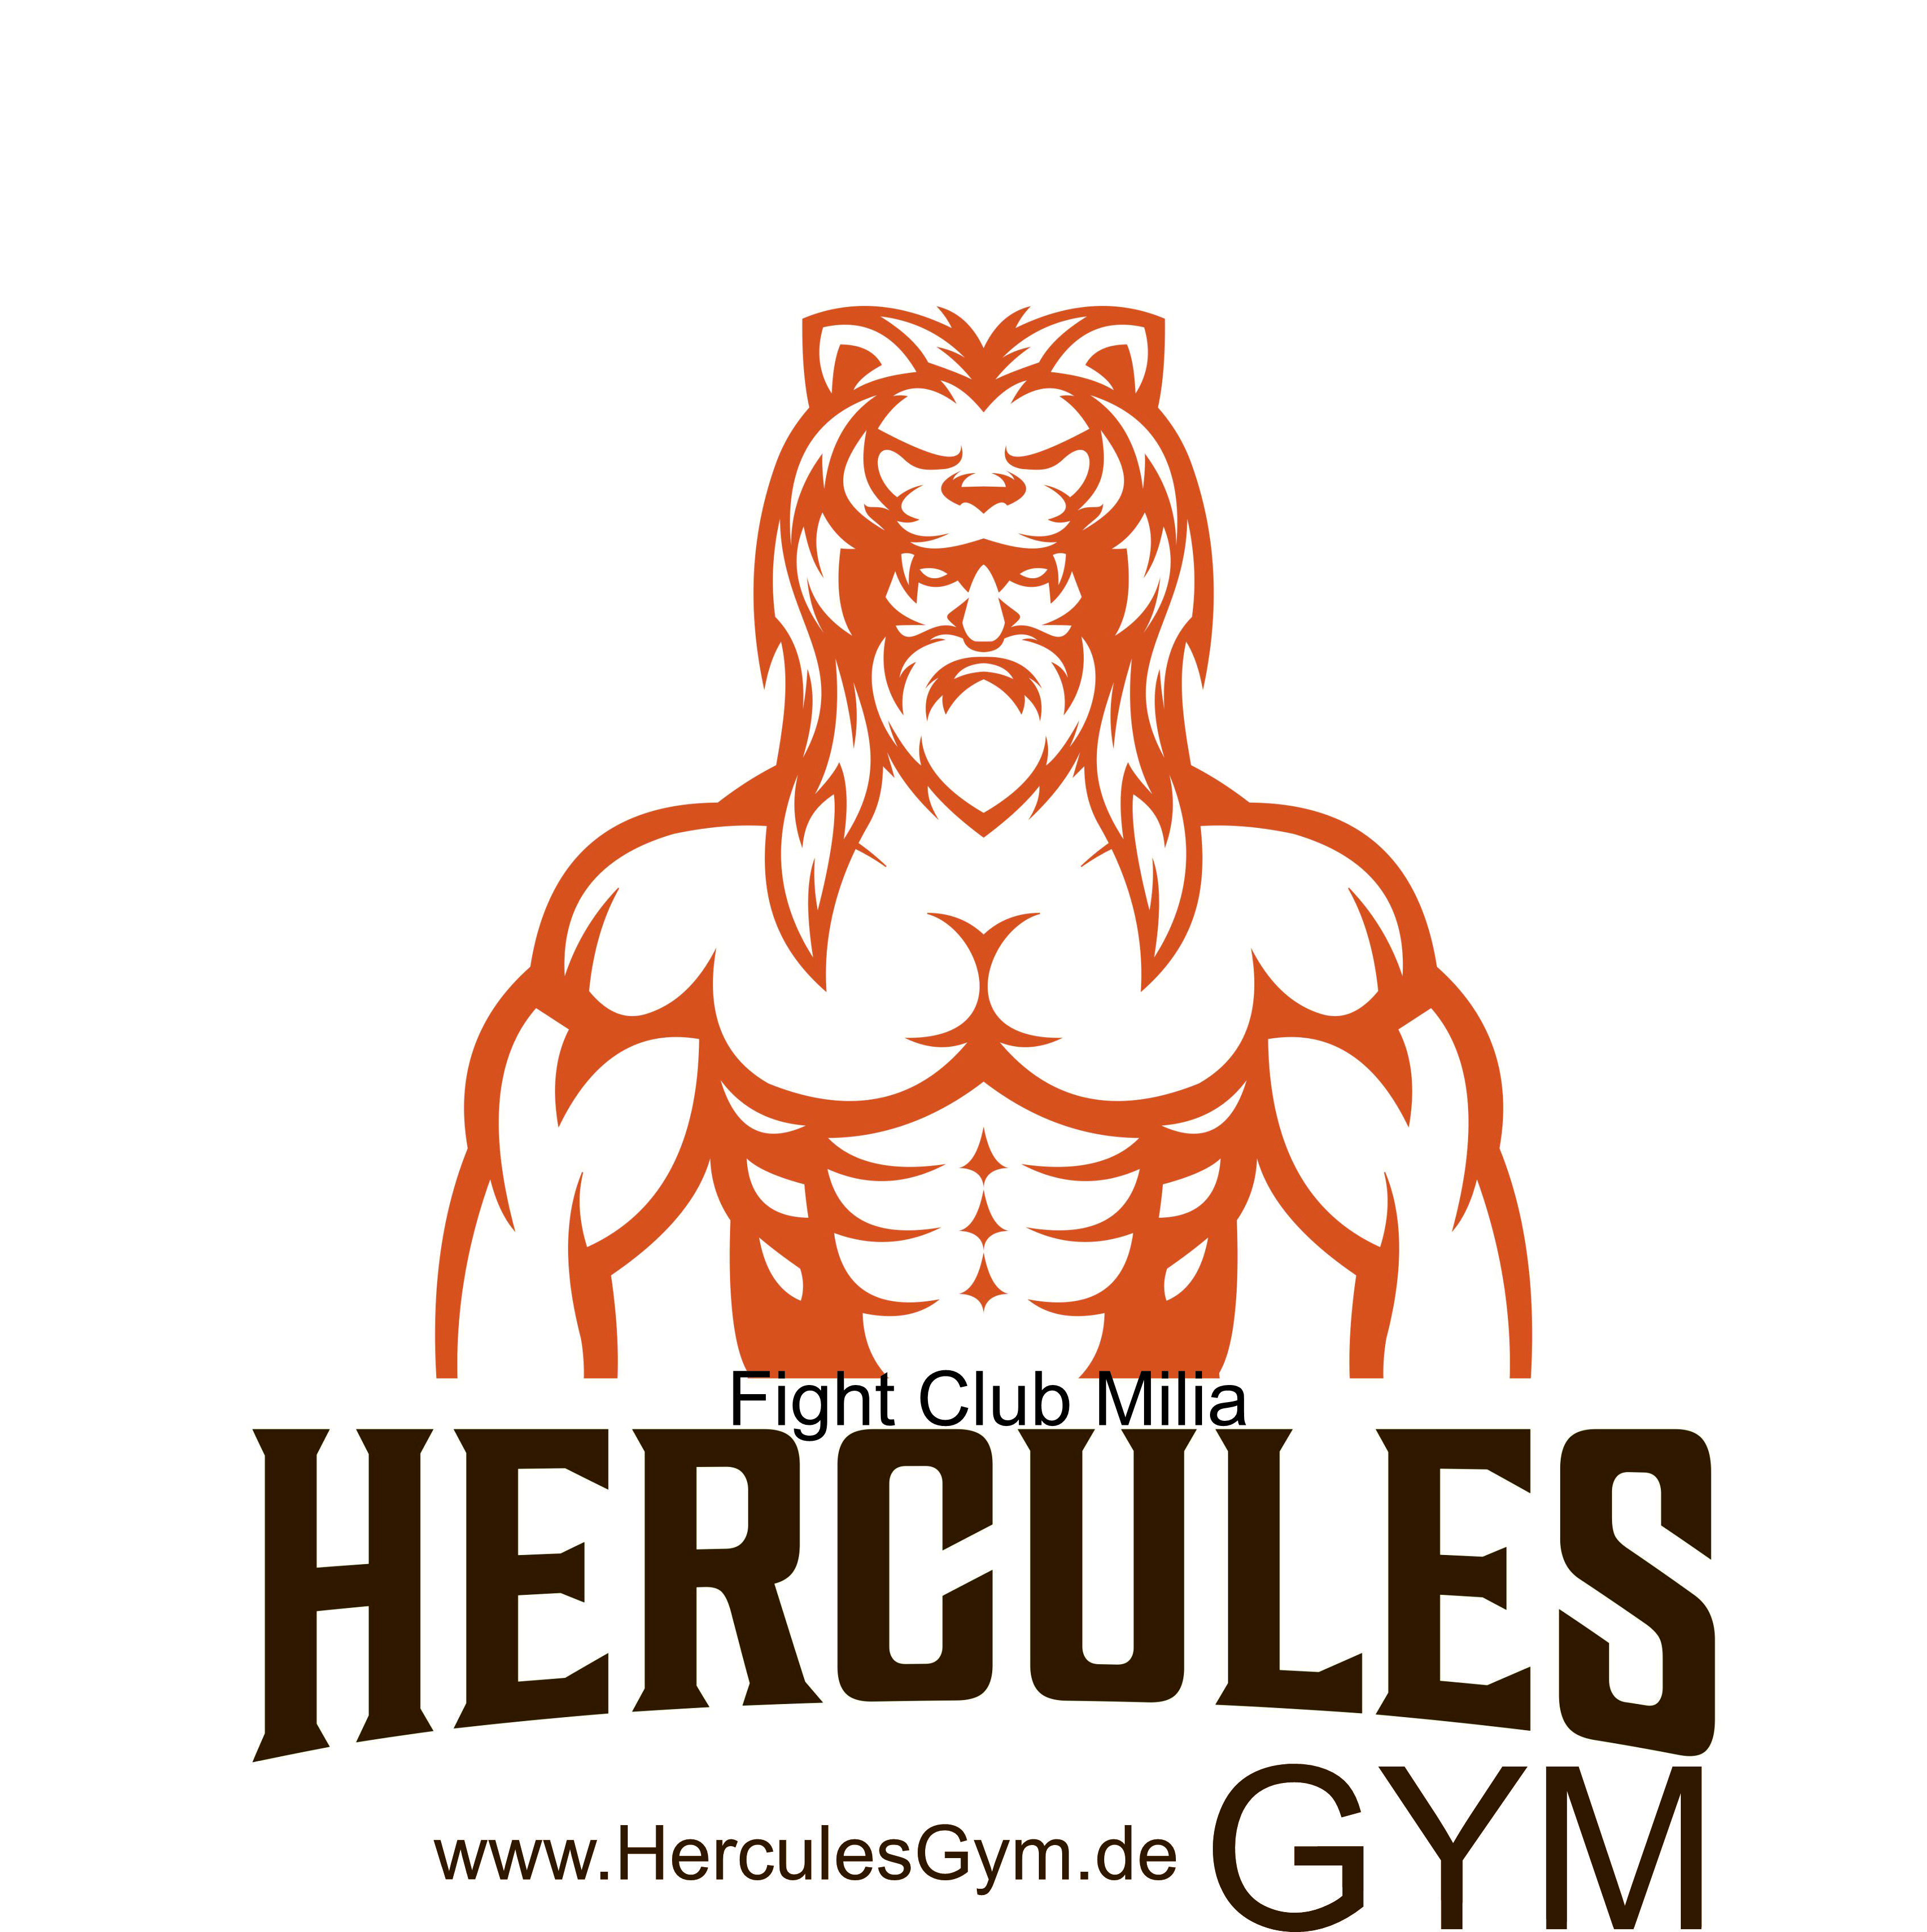 Hercules Gym - Fight Club Milia